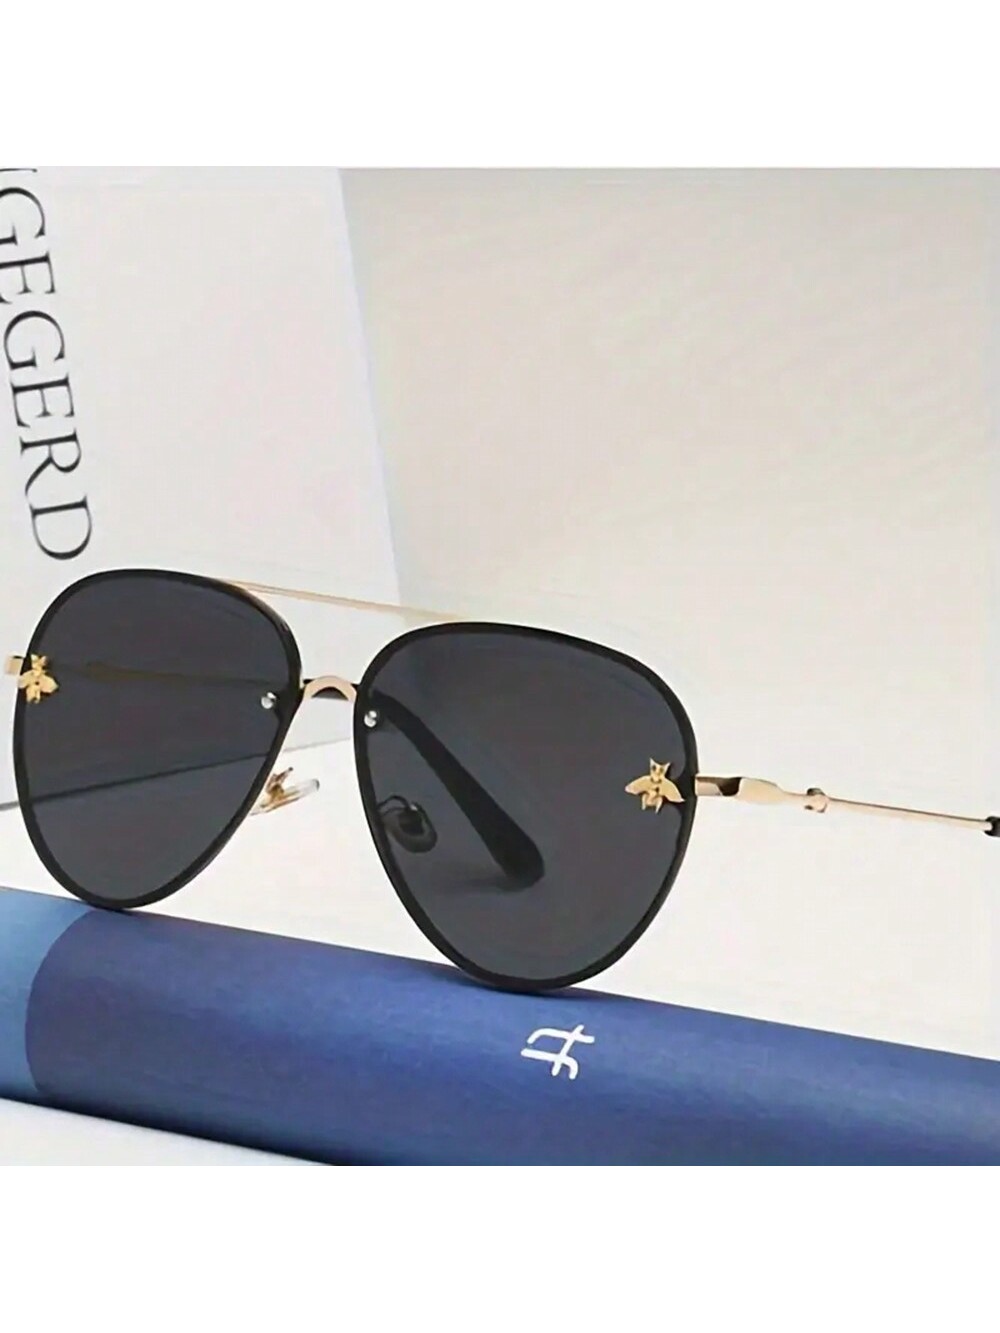 1 шт. новые модные квадратные металлические солнцезащитные очки унисекс в стиле ретро Little Bee 10 шт квадратные плоские металлические кольца для сумок